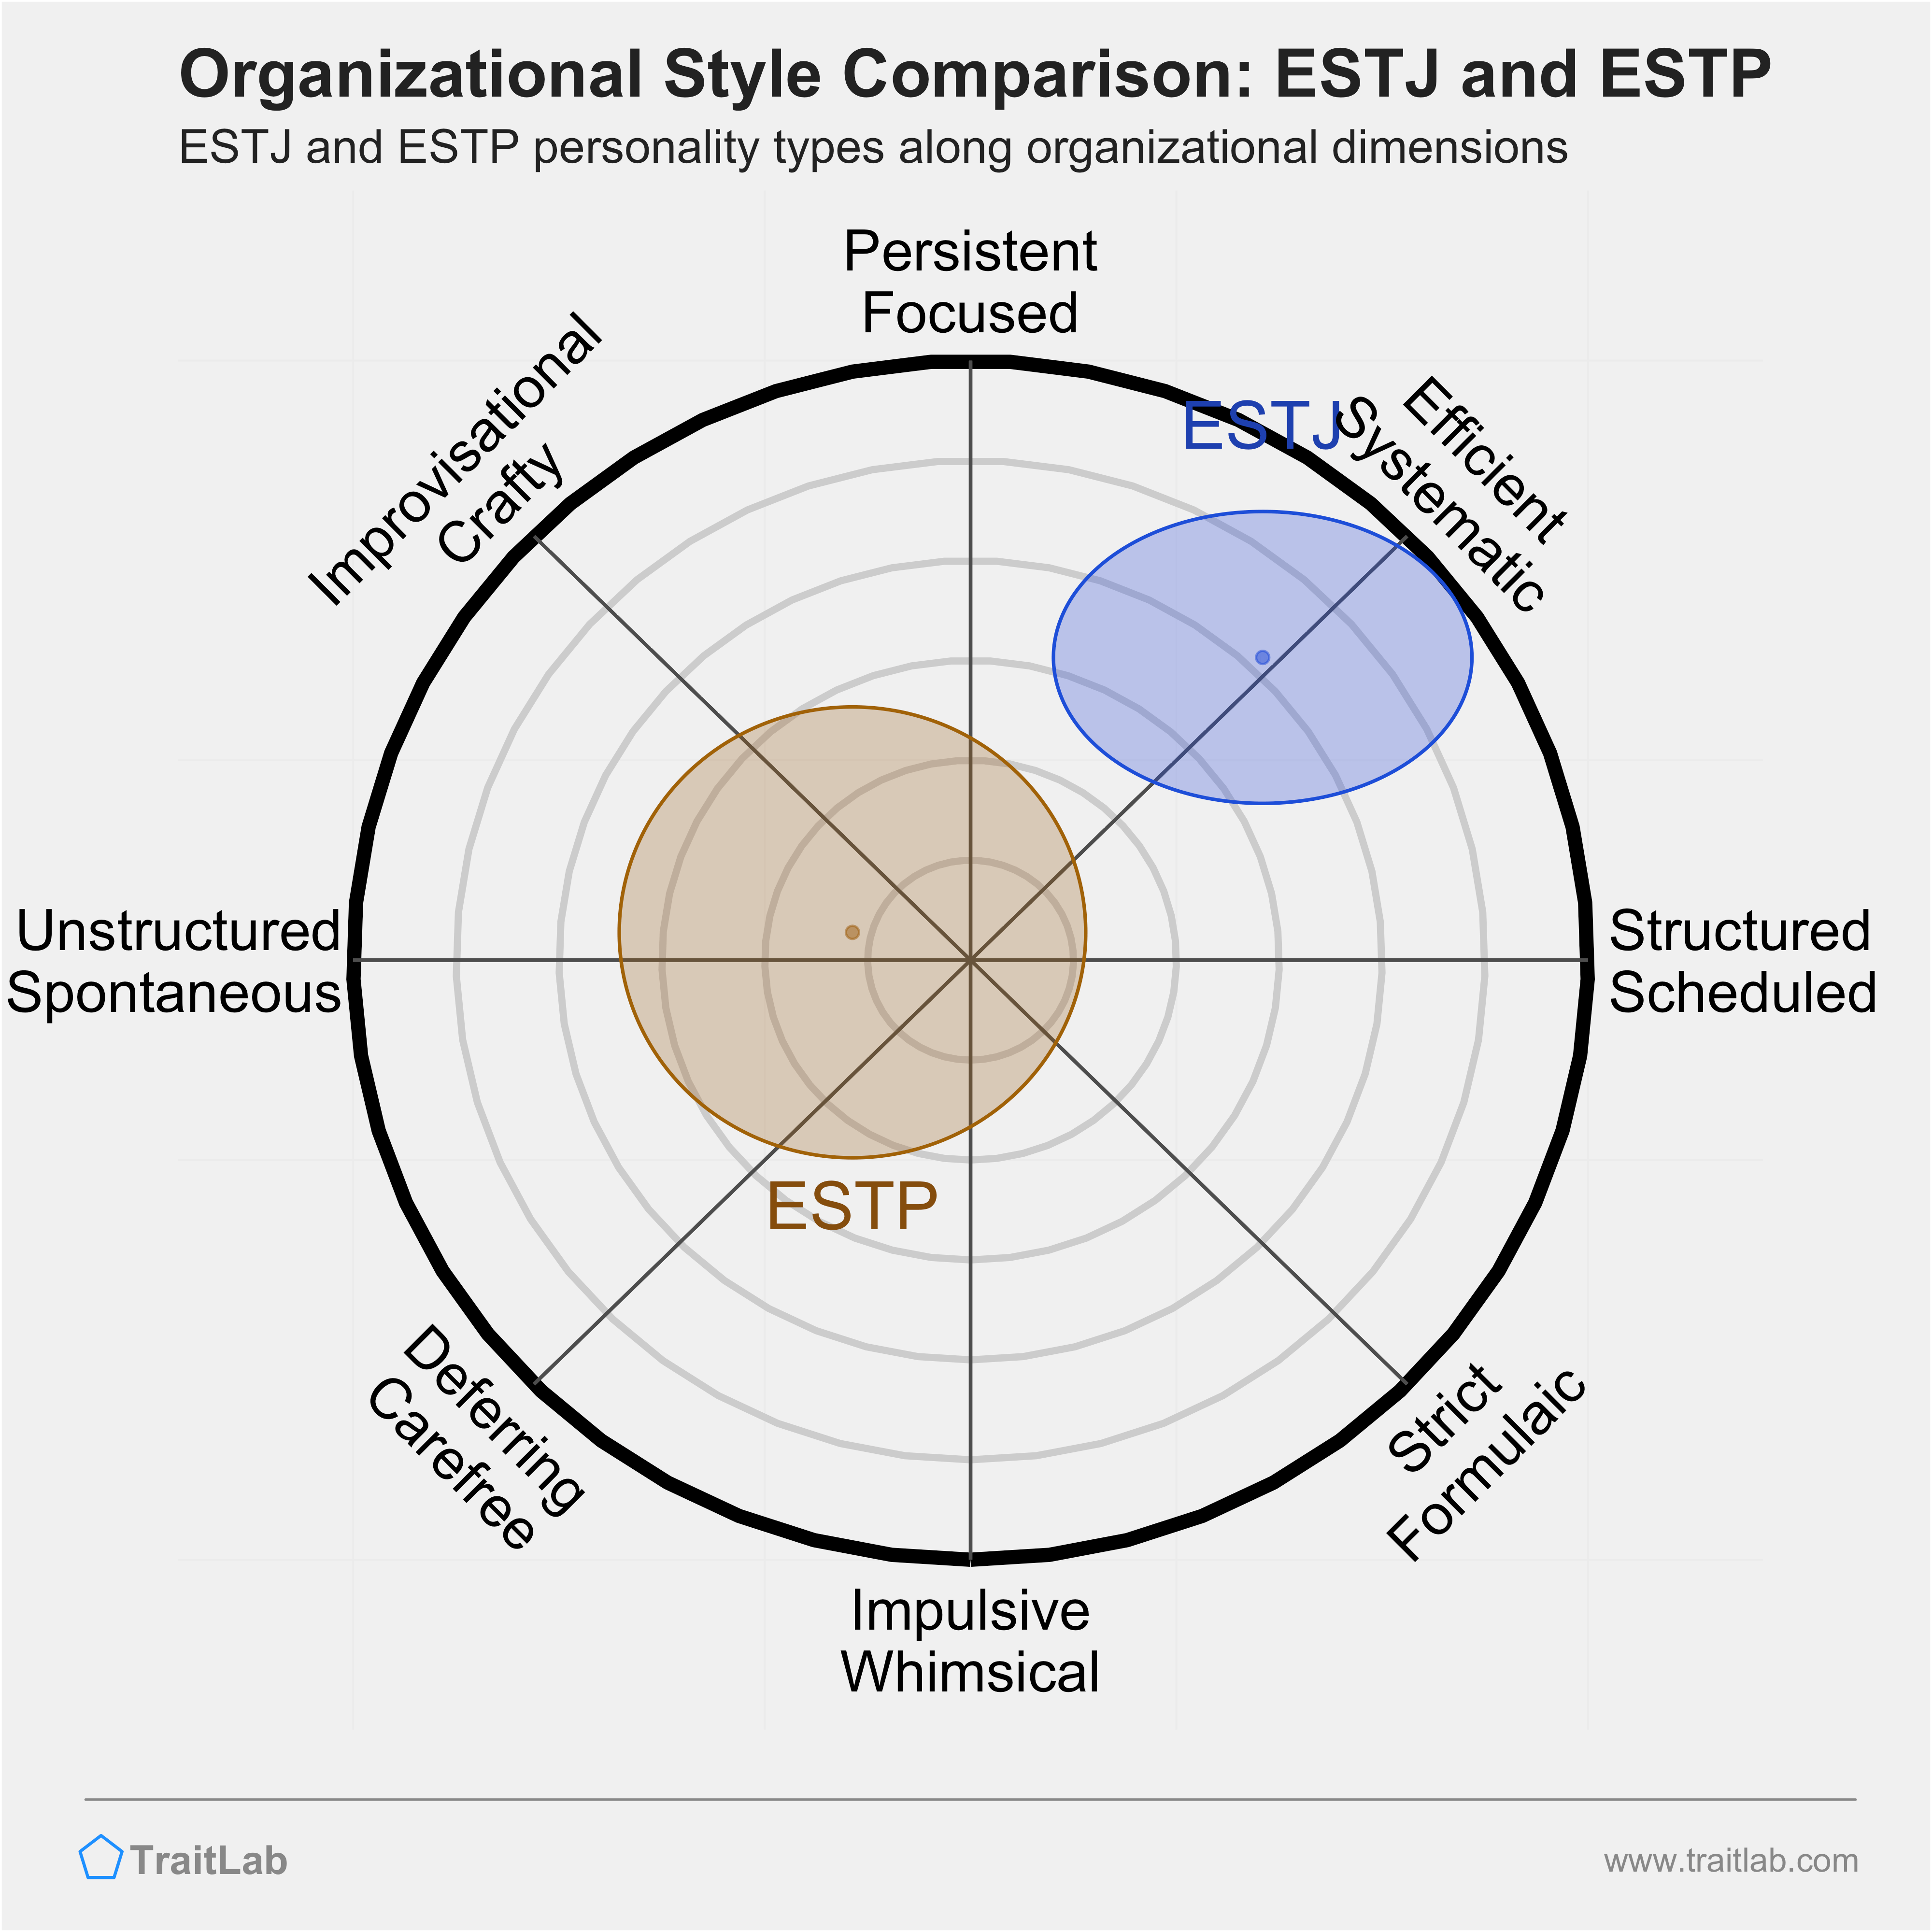 ESTJ and ESTP comparison across organizational dimensions